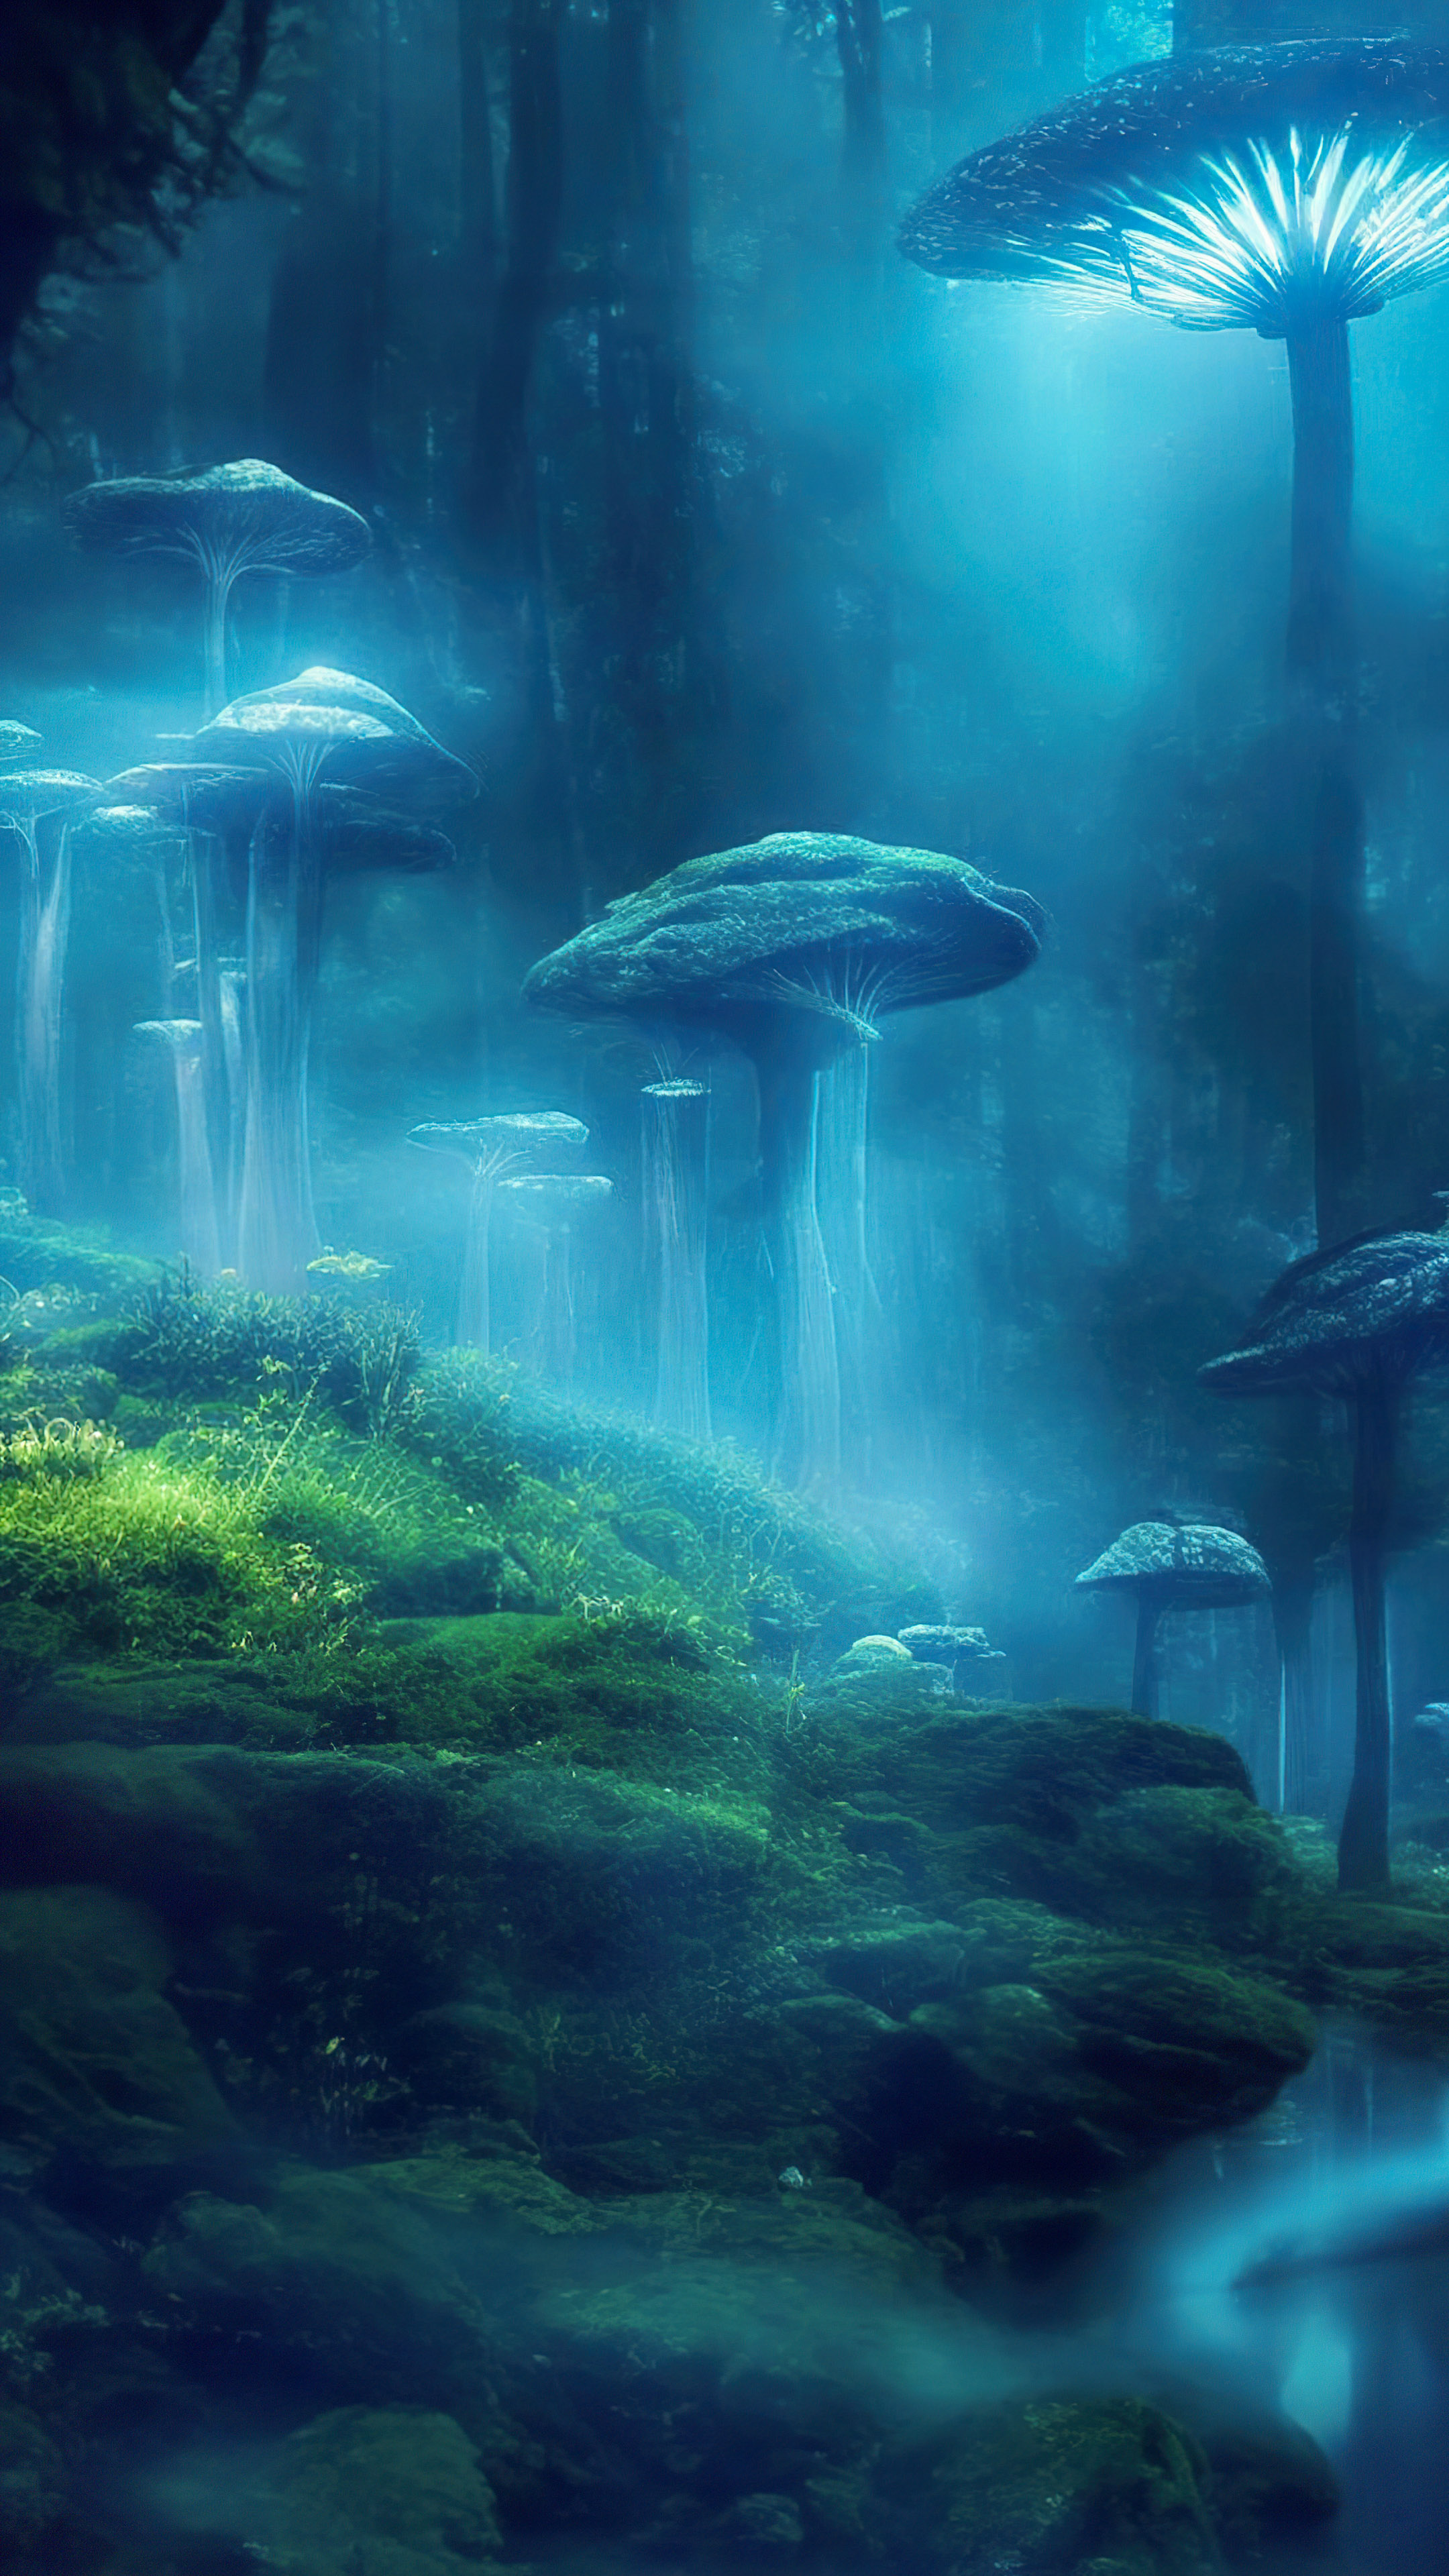 Apportez la beauté d’un vallon mystique à votre iPhone avec notre beau fond d’écran de paysage, présentant des champignons bioluminescents qui créent une scène enchantée et surnaturelle. 